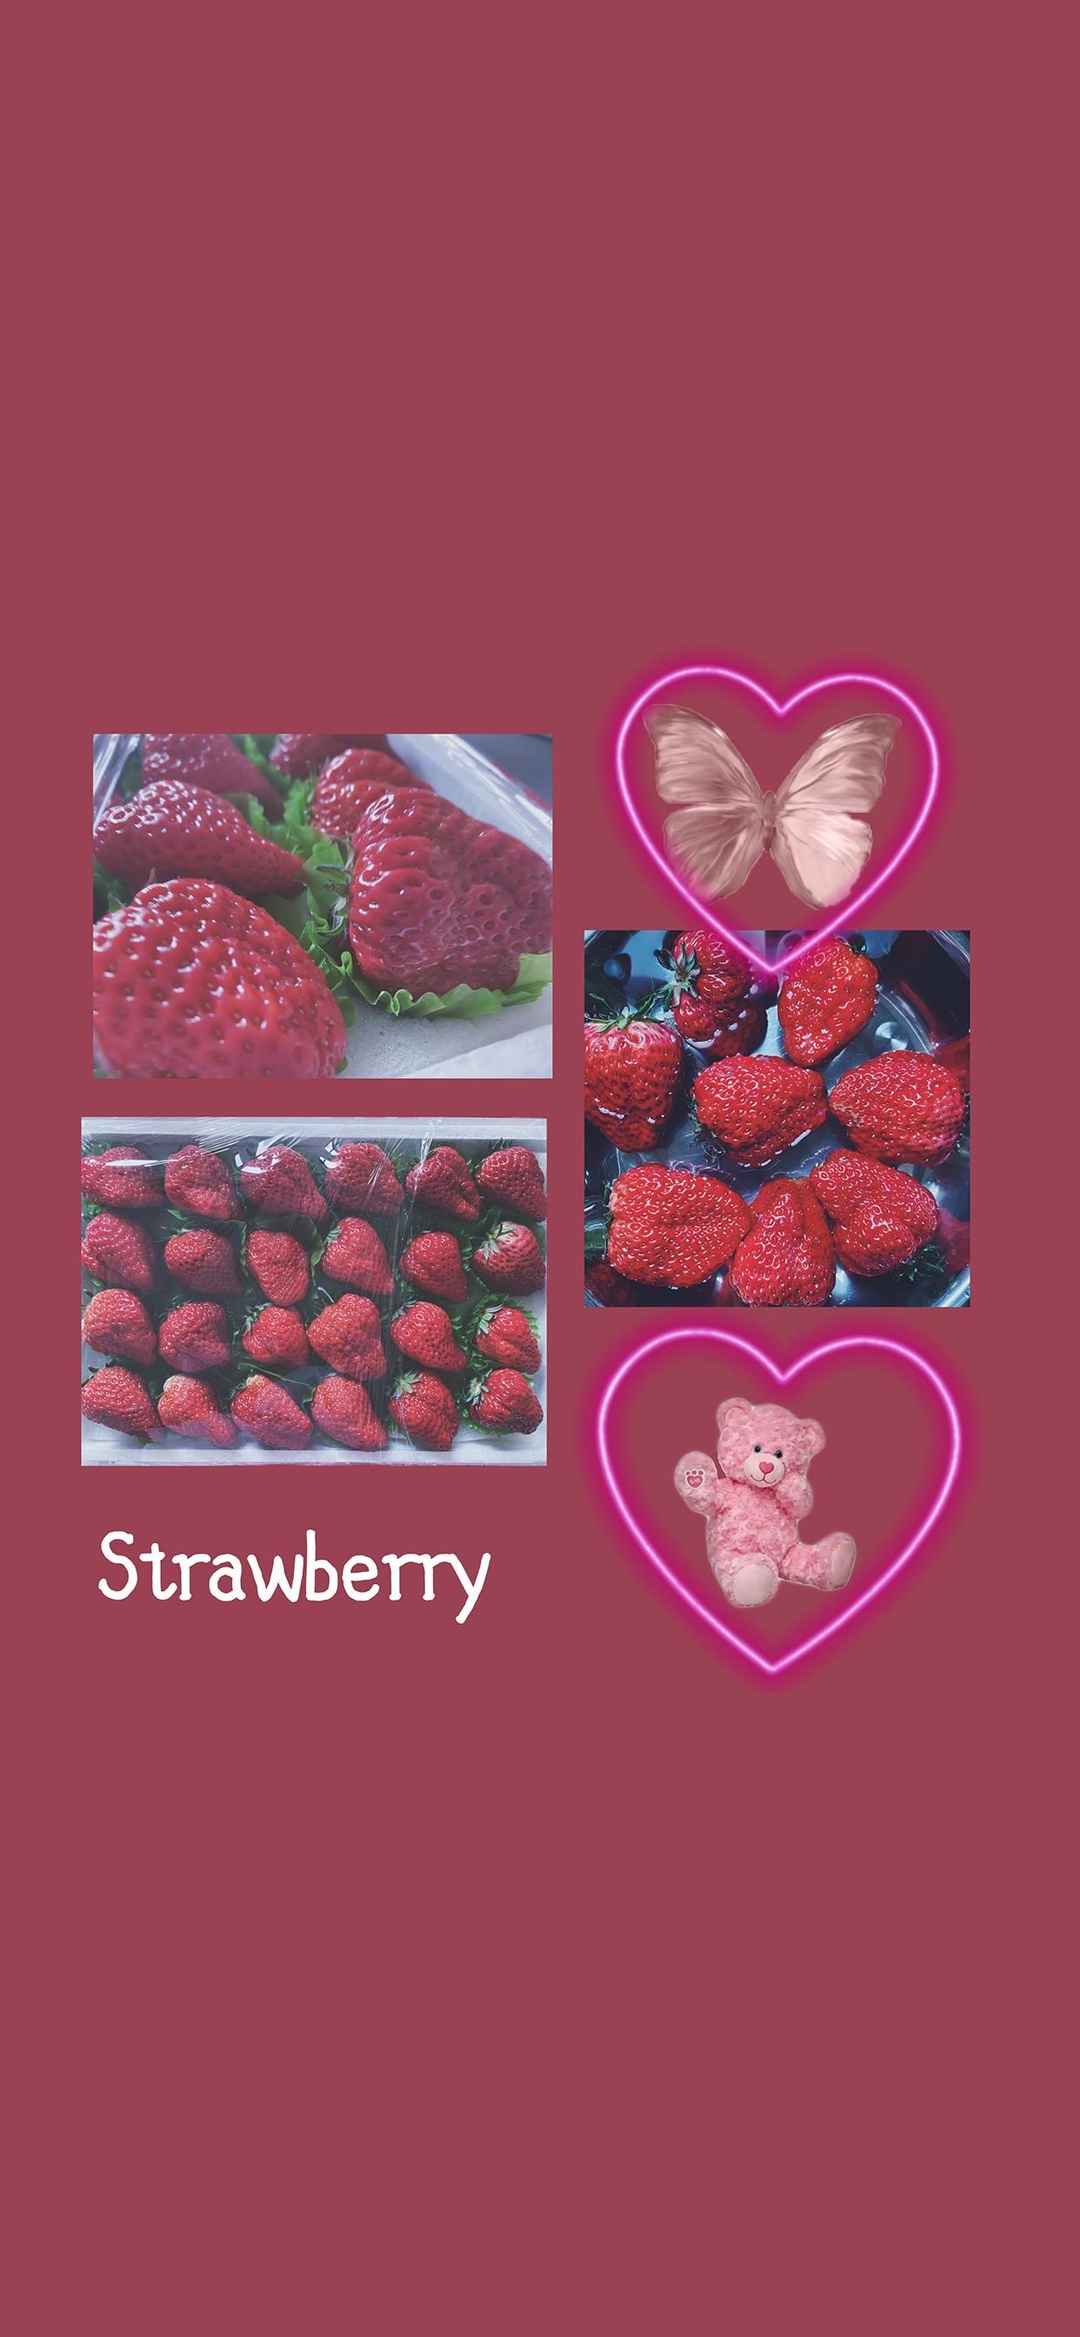 果蔬草莓美食图片